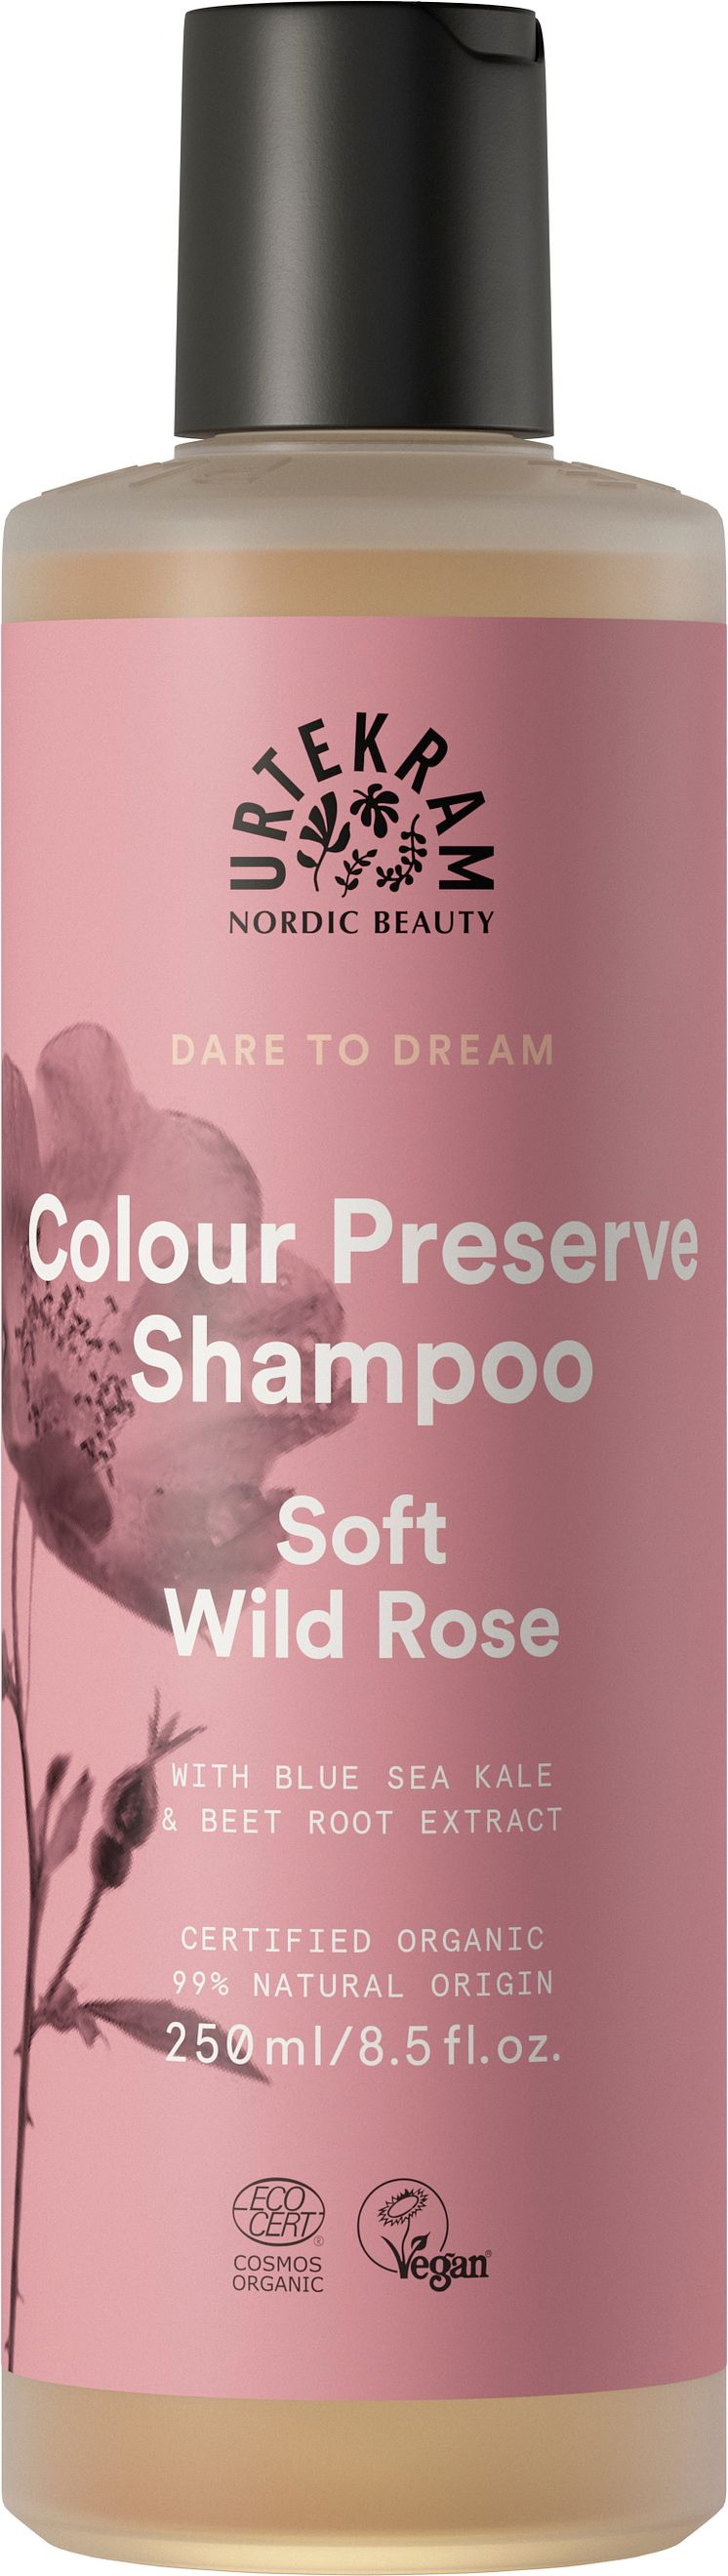 Urtekram Beauty Dare to Dream Shampoo